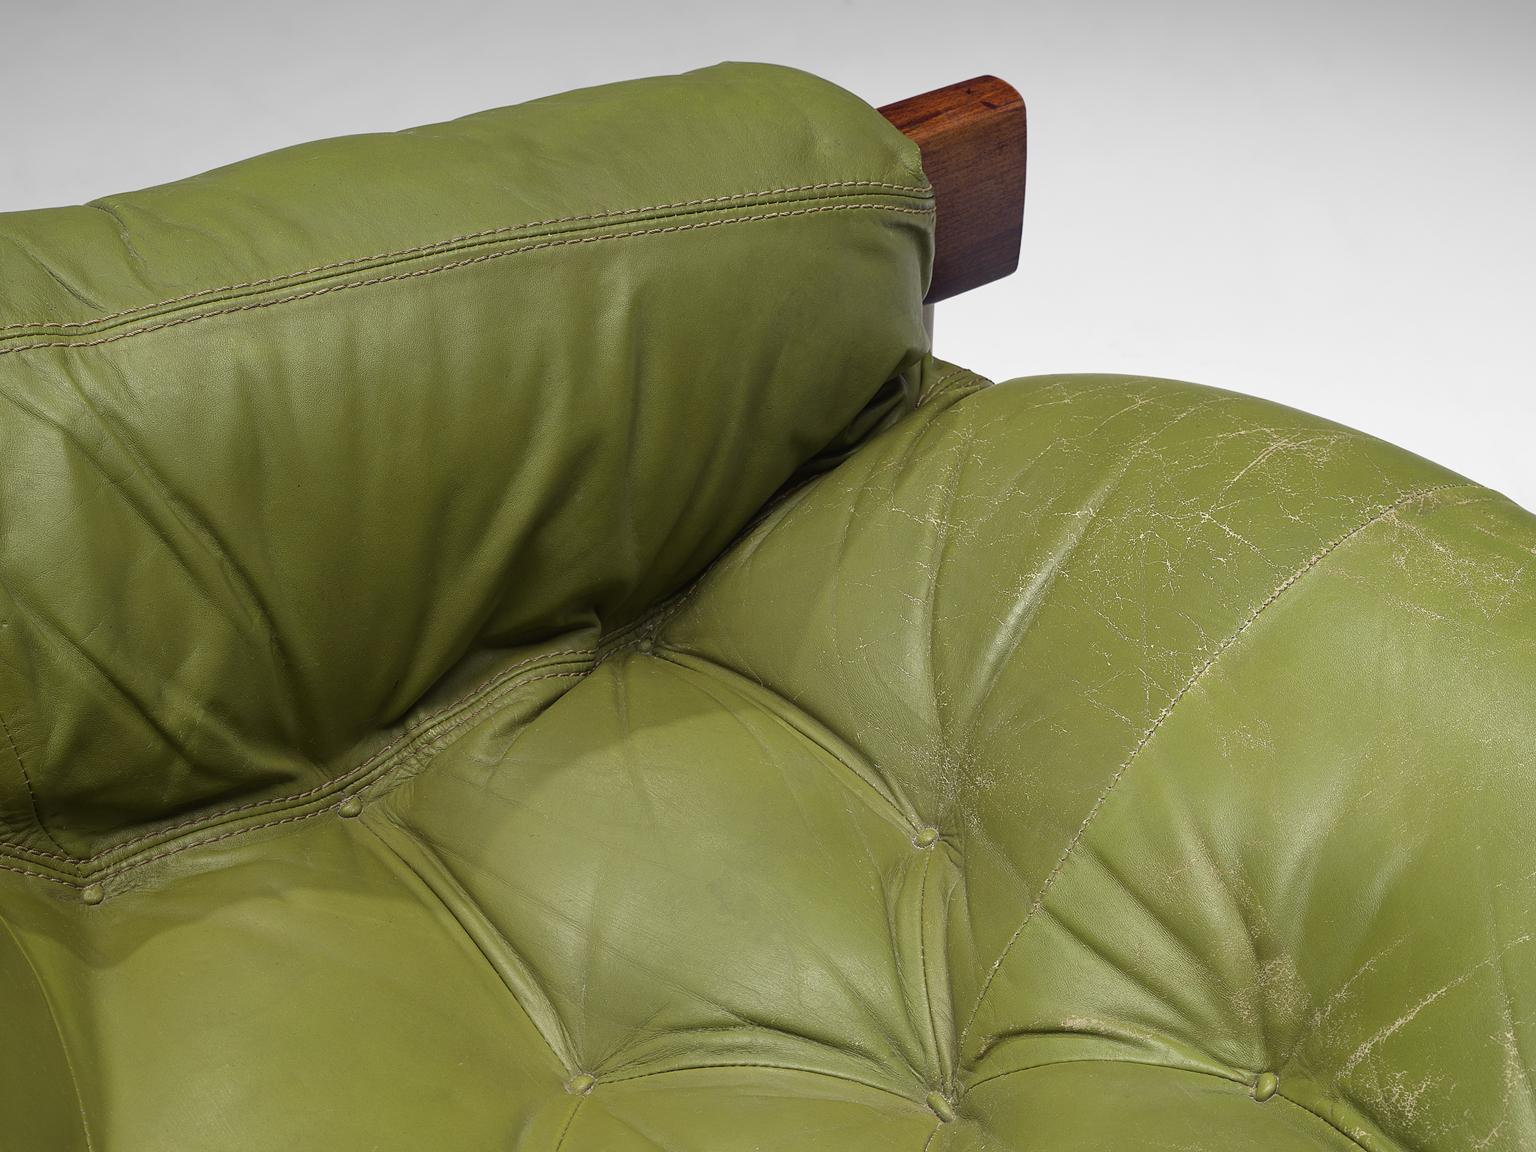 Percival Lafer Brasilianisches Sofa mit grünem Leder 2